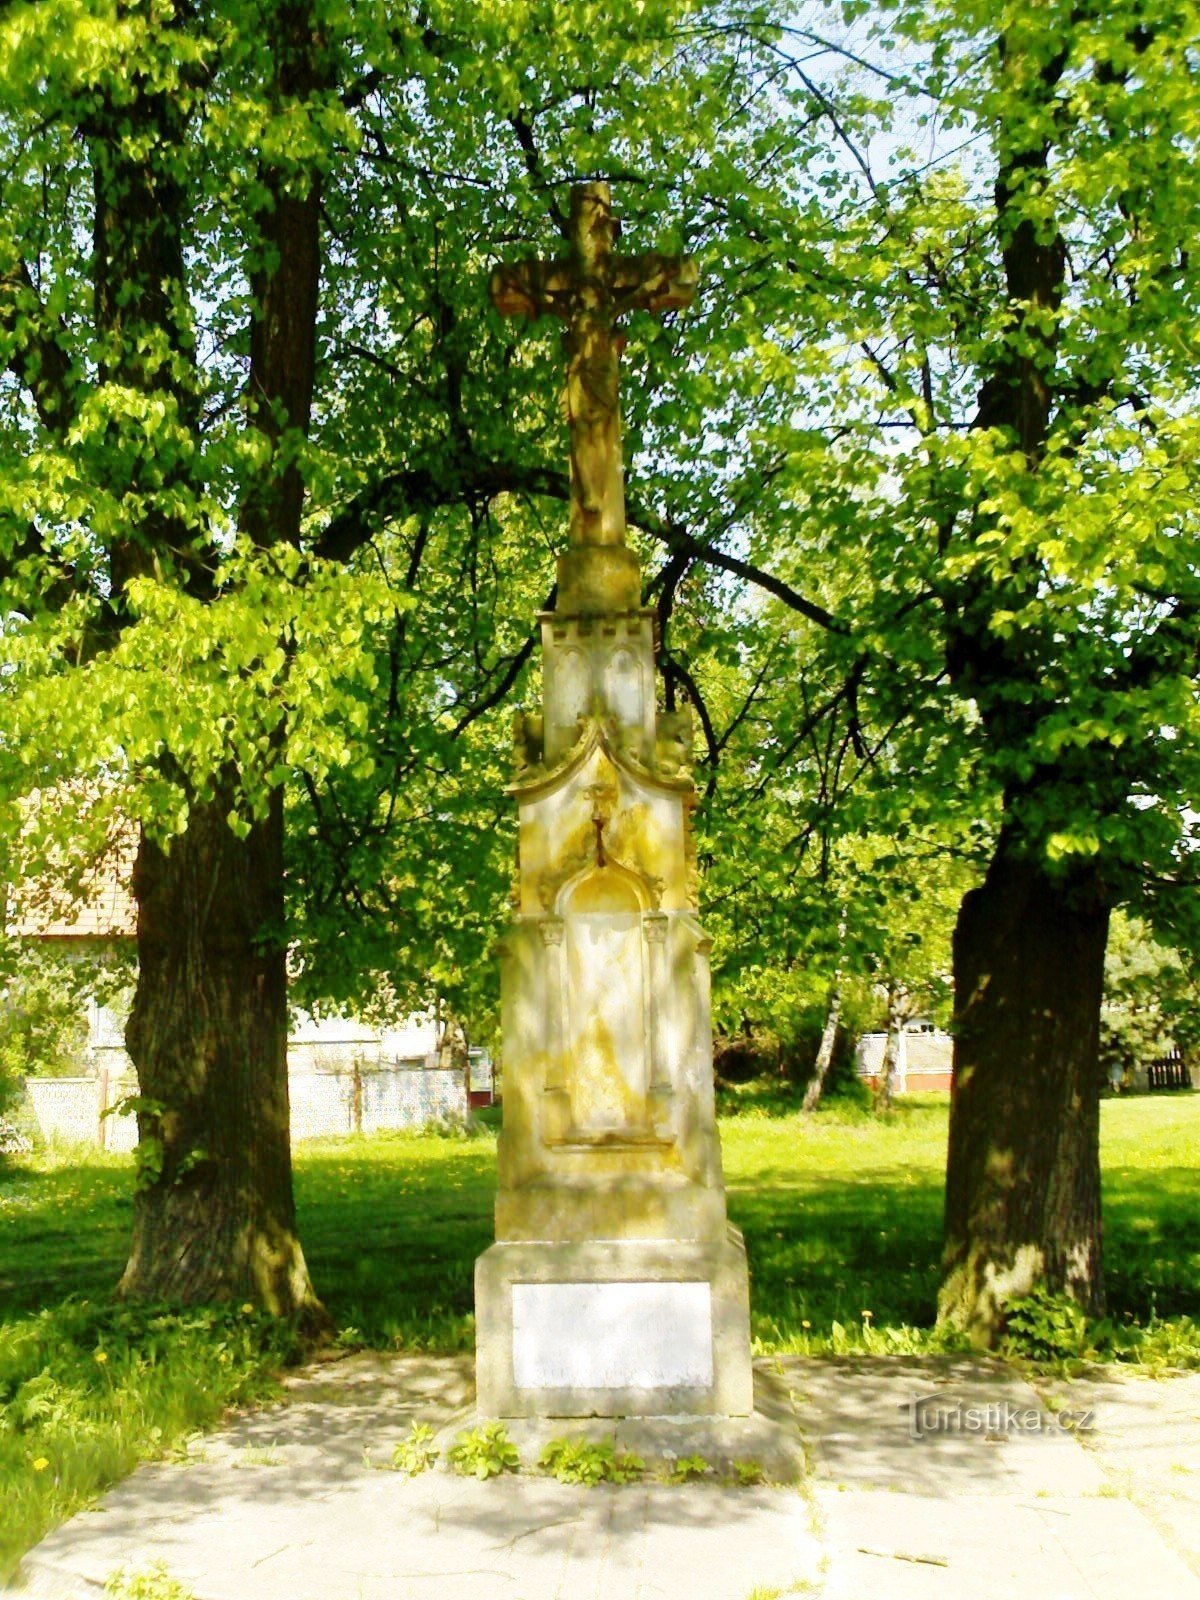 Staré Smrkovice - keresztre feszített emlékmű